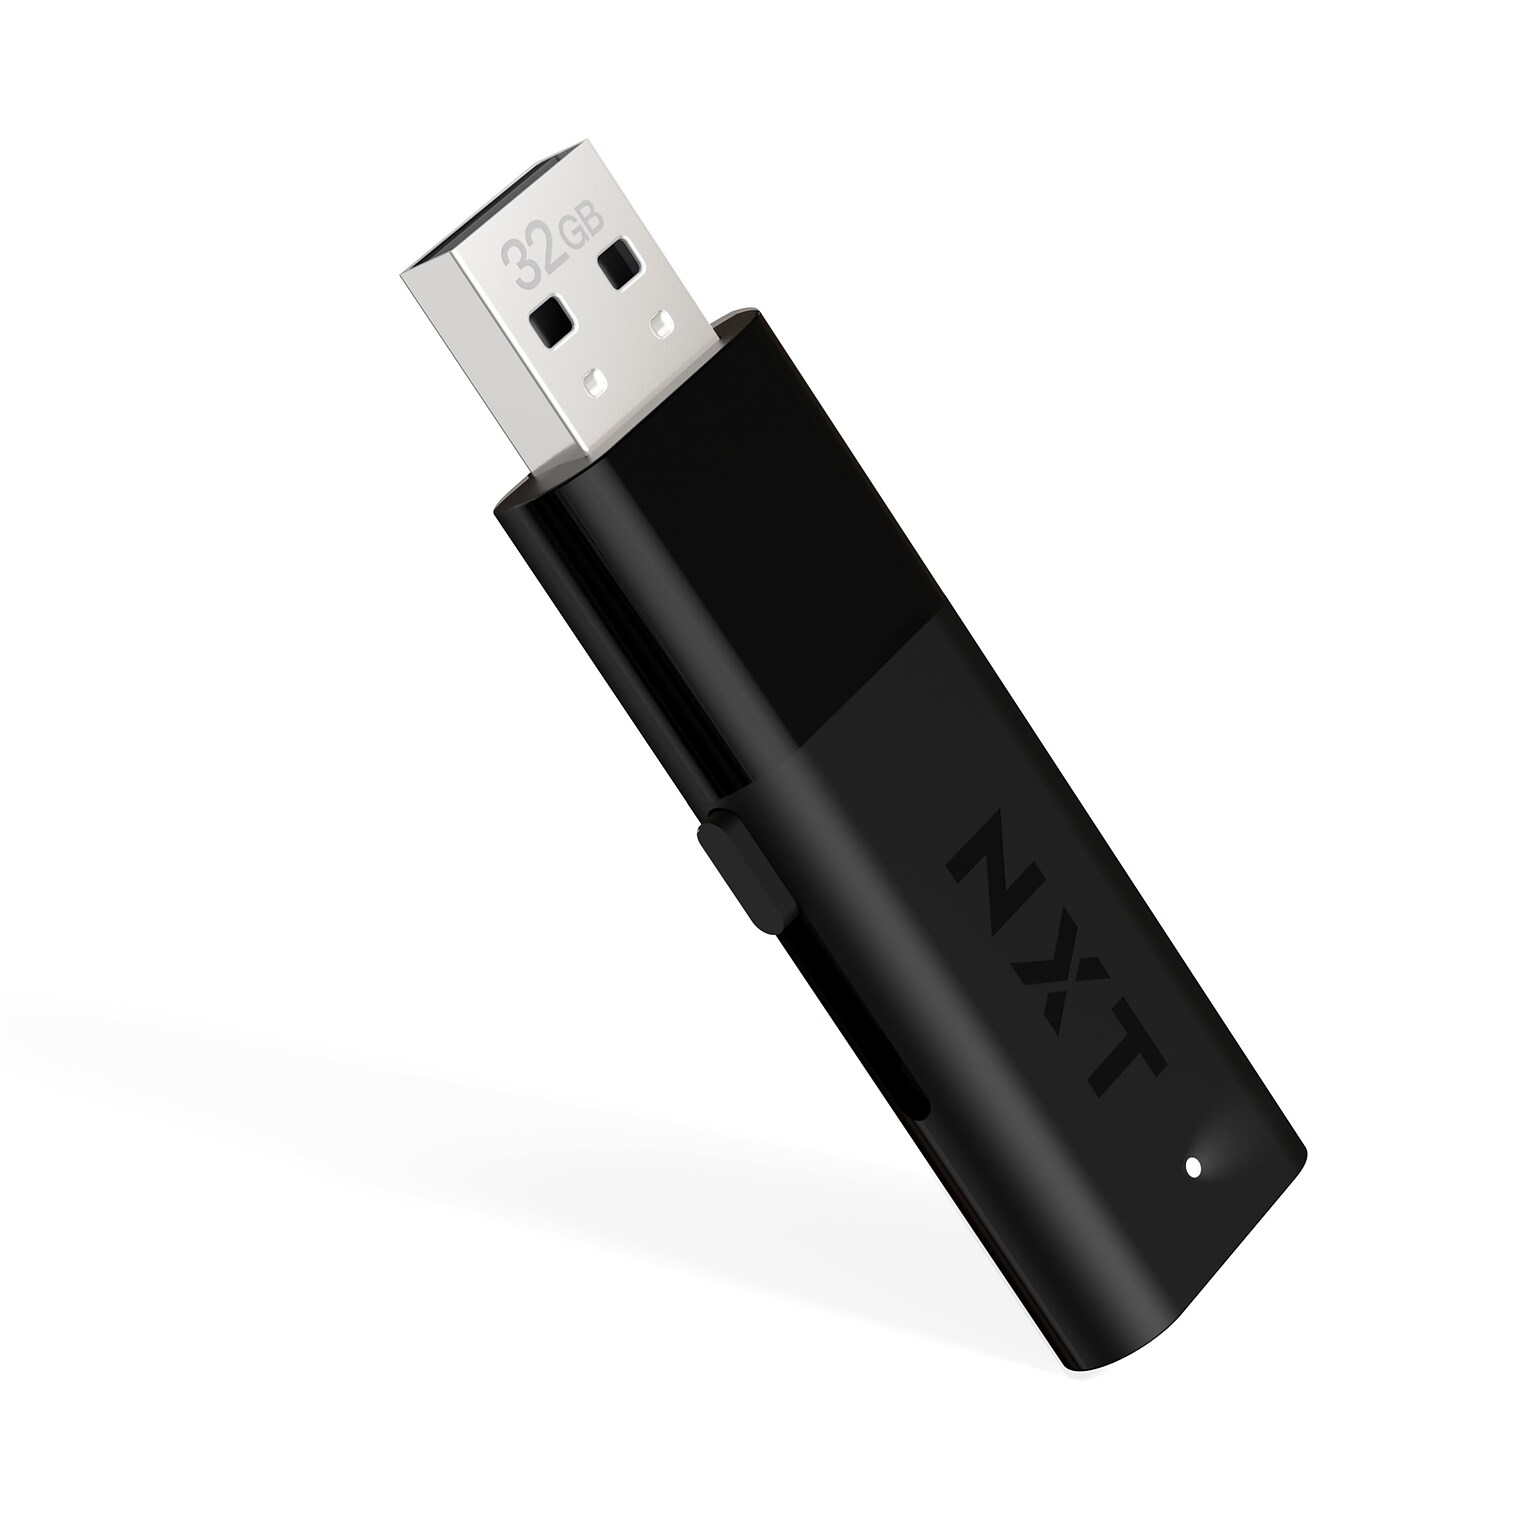 NXT Technologies™ 32GB USB 2.0 Flash Drive (NX27989)